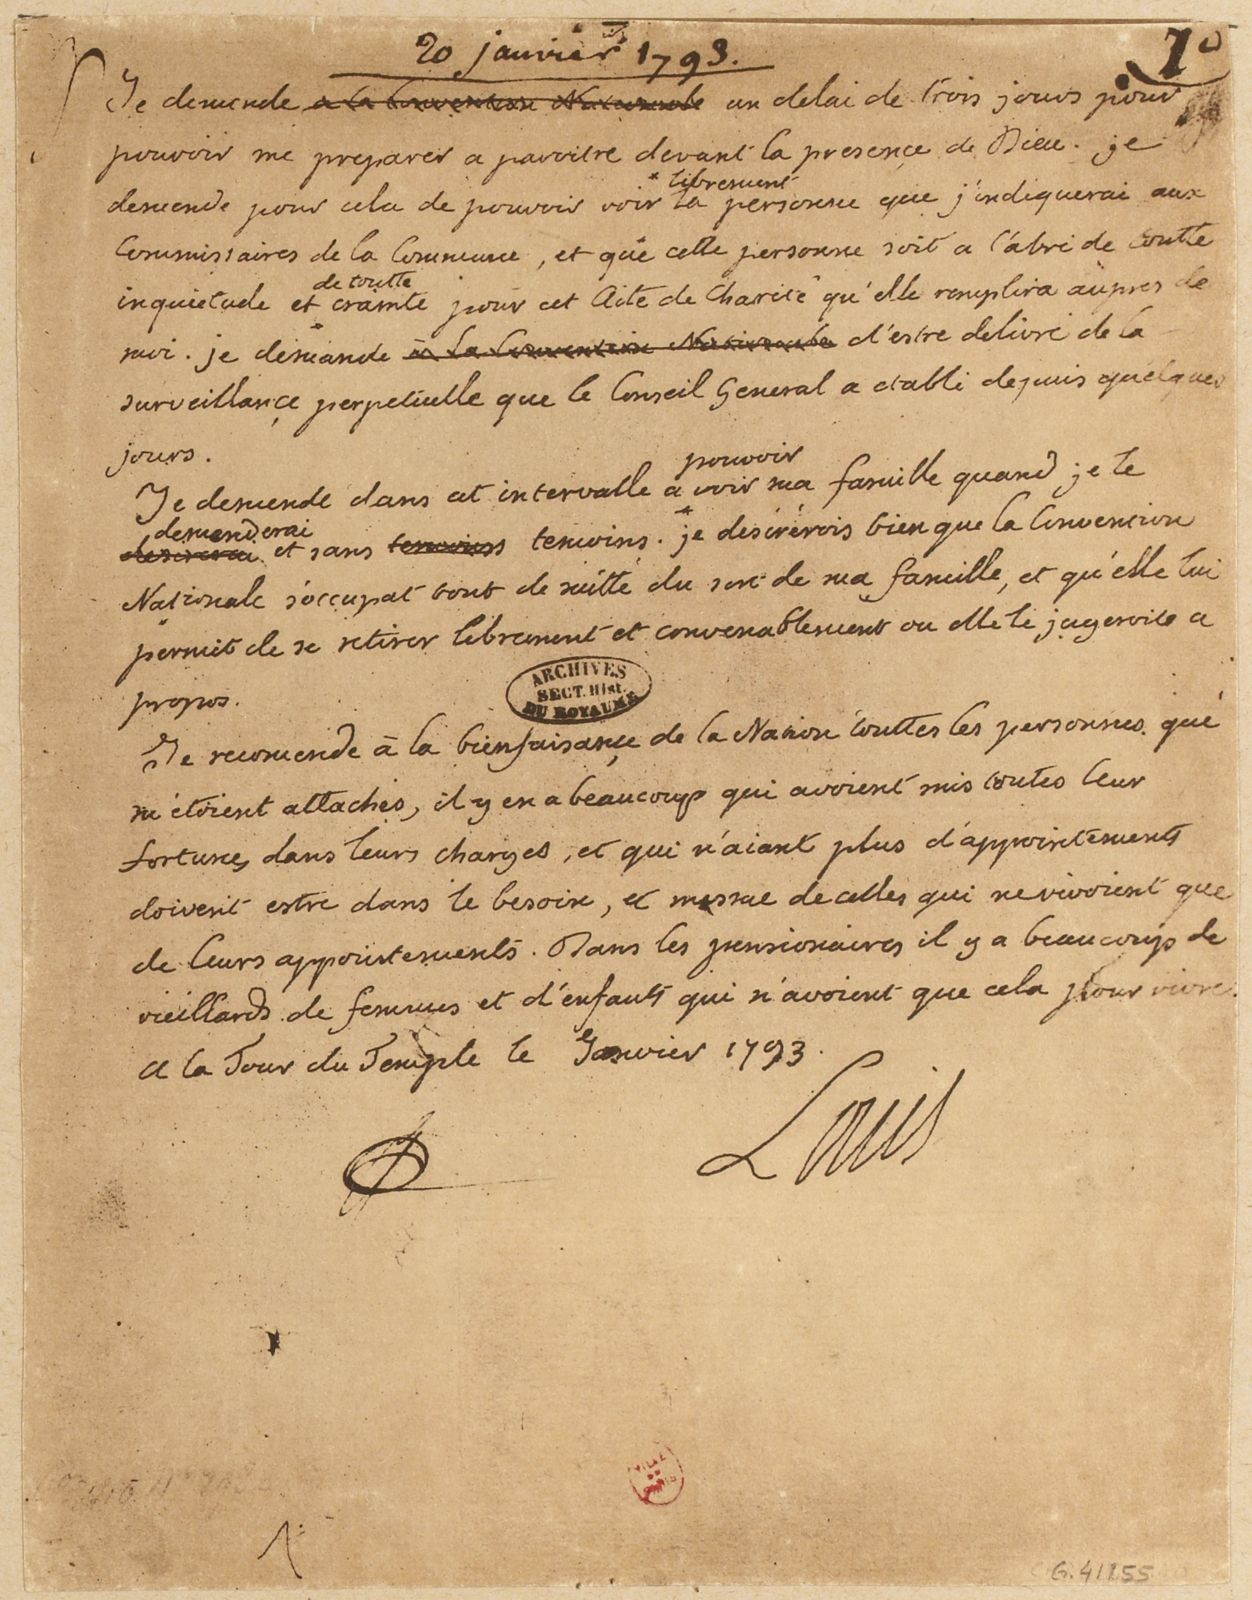 dernière lettre de Louis XVI, datée du 20 janvier 1793